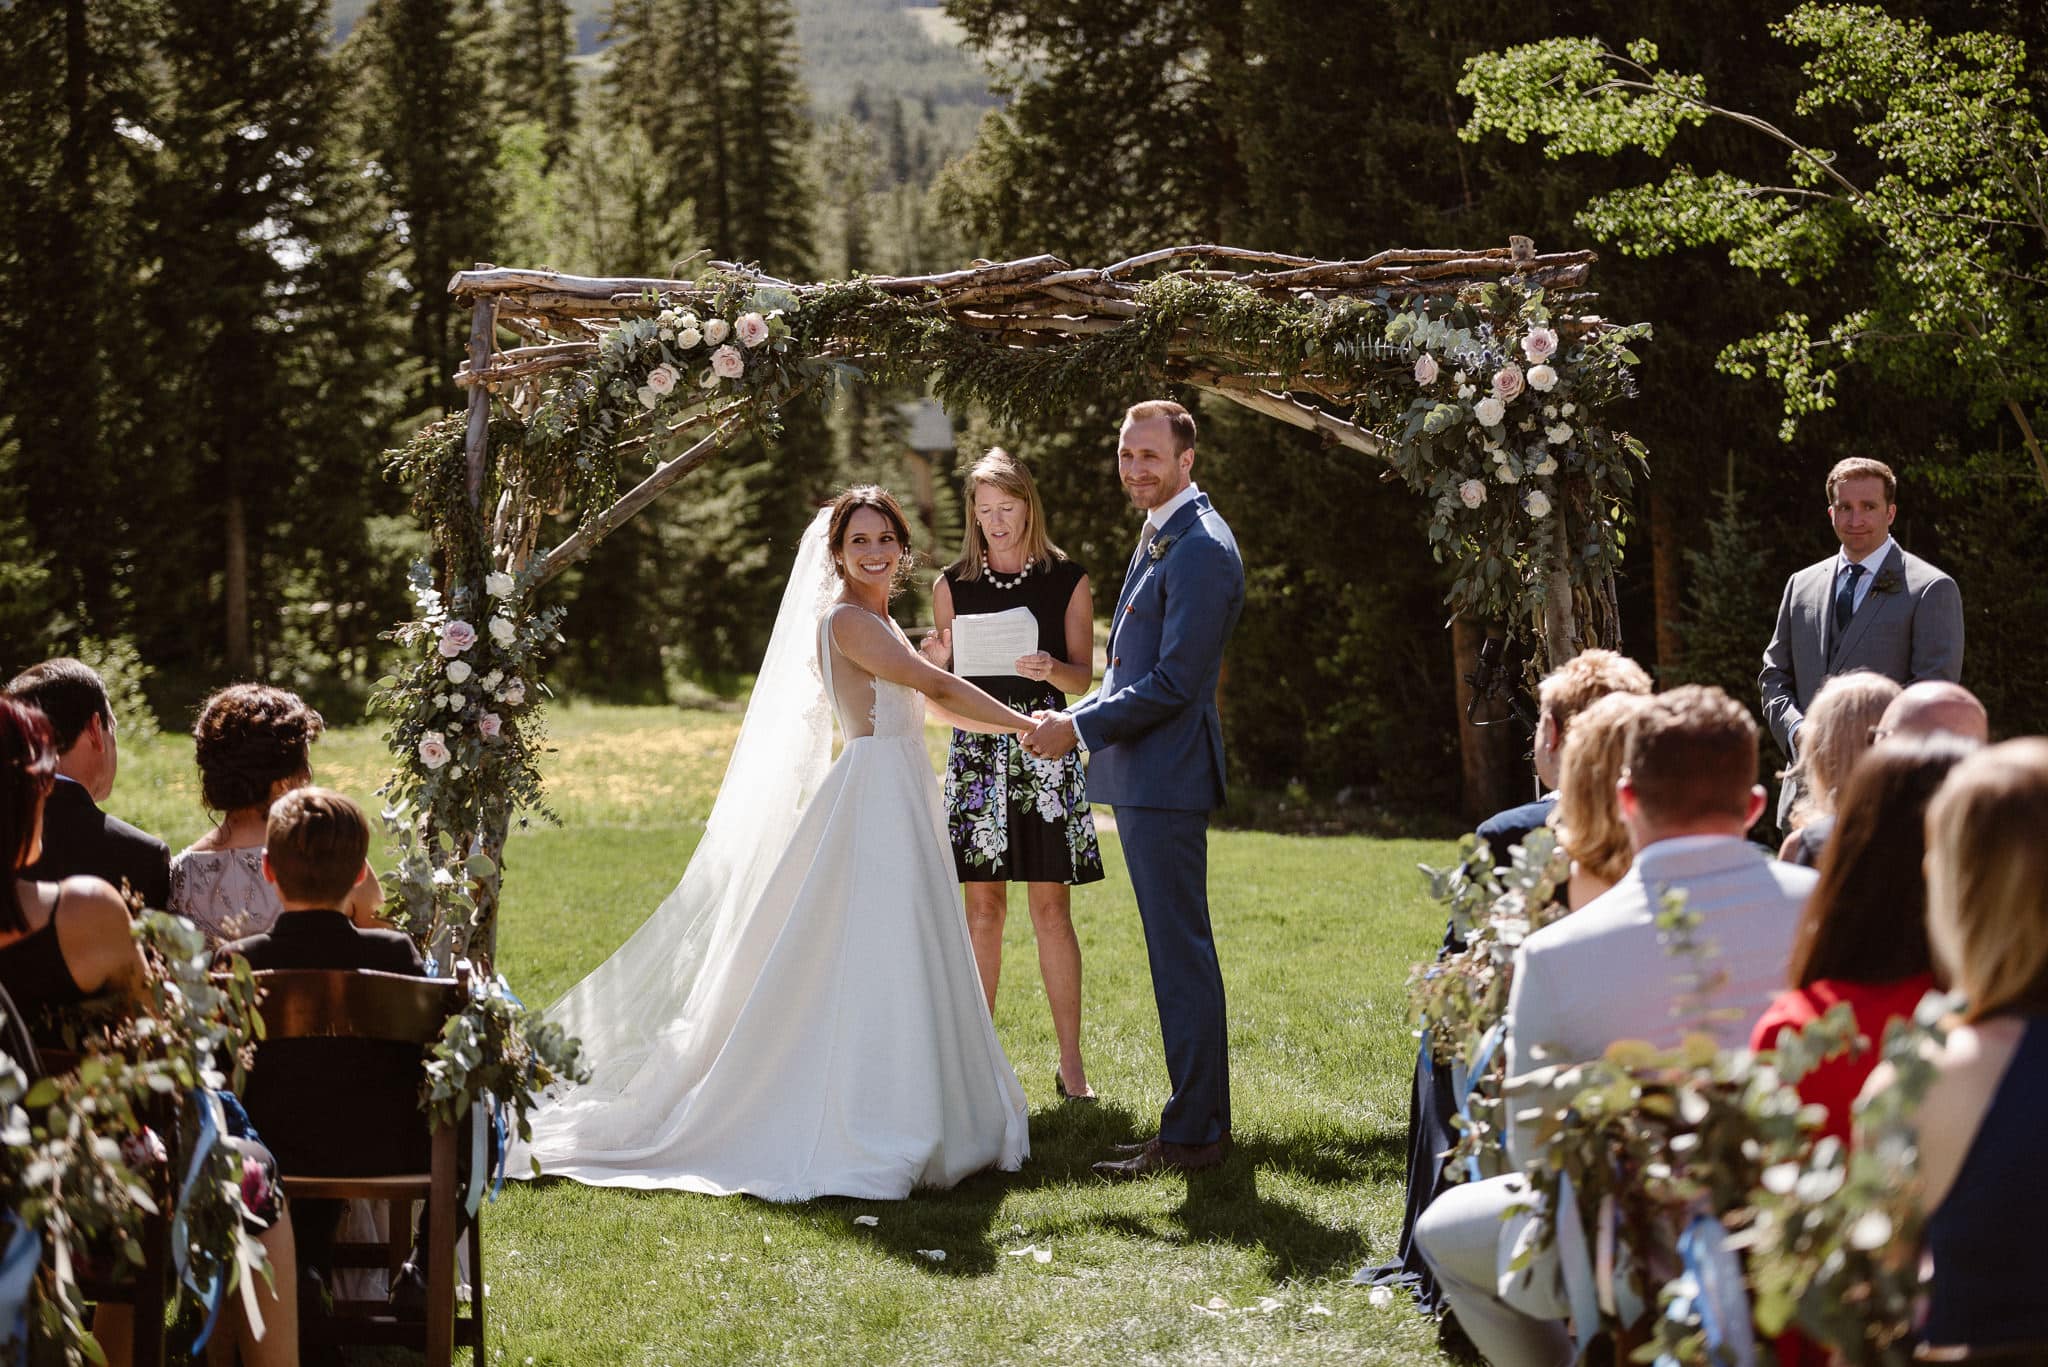 Breckenridge Nordic Center wedding venue, outdoor log cabin wedding ceremony, Colorado wedding photographer